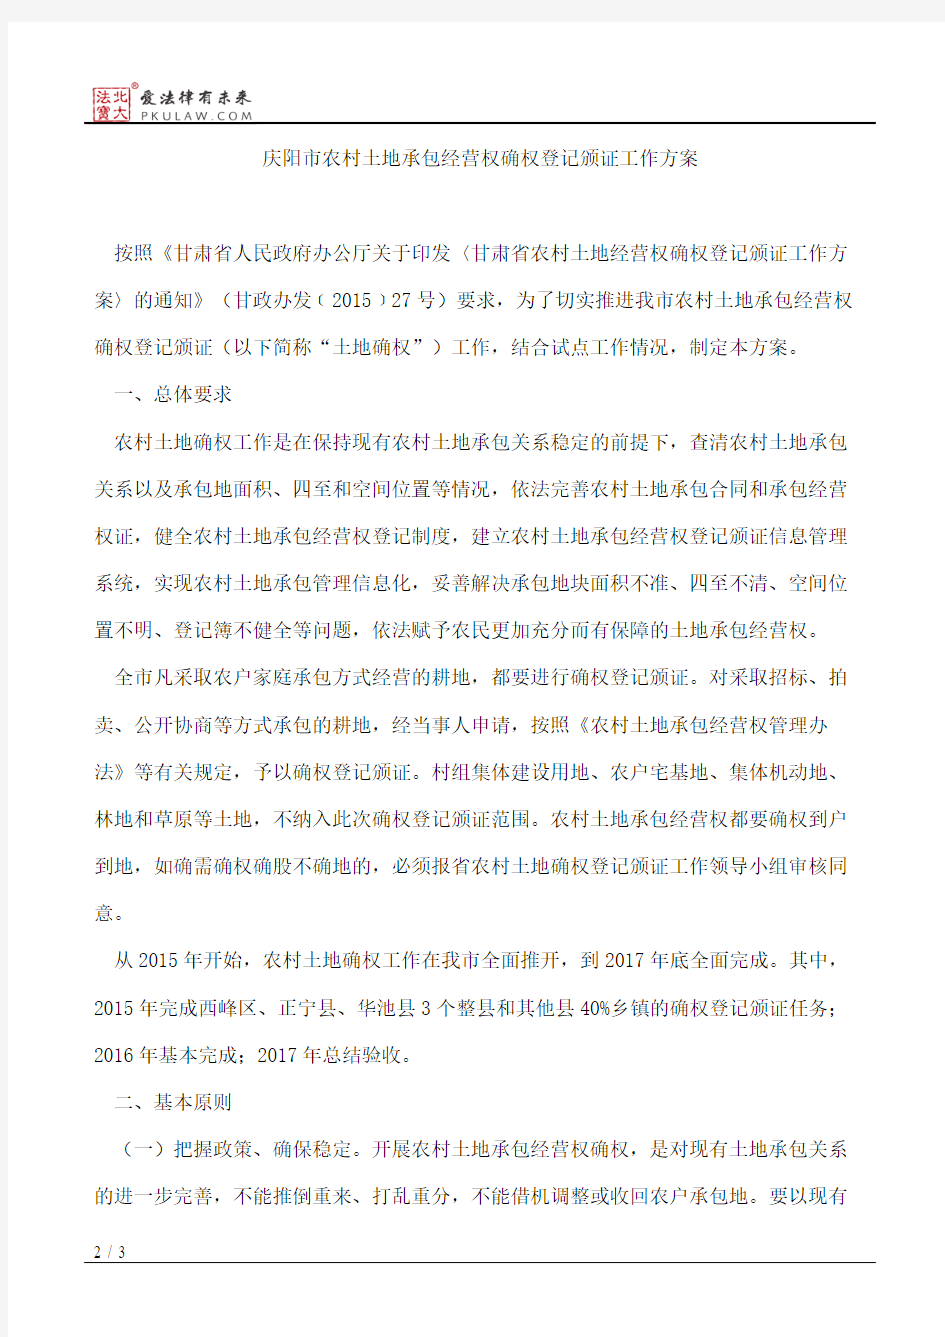 庆阳市人民政府办公室关于印发庆阳市农村土地承包经营权确权登记